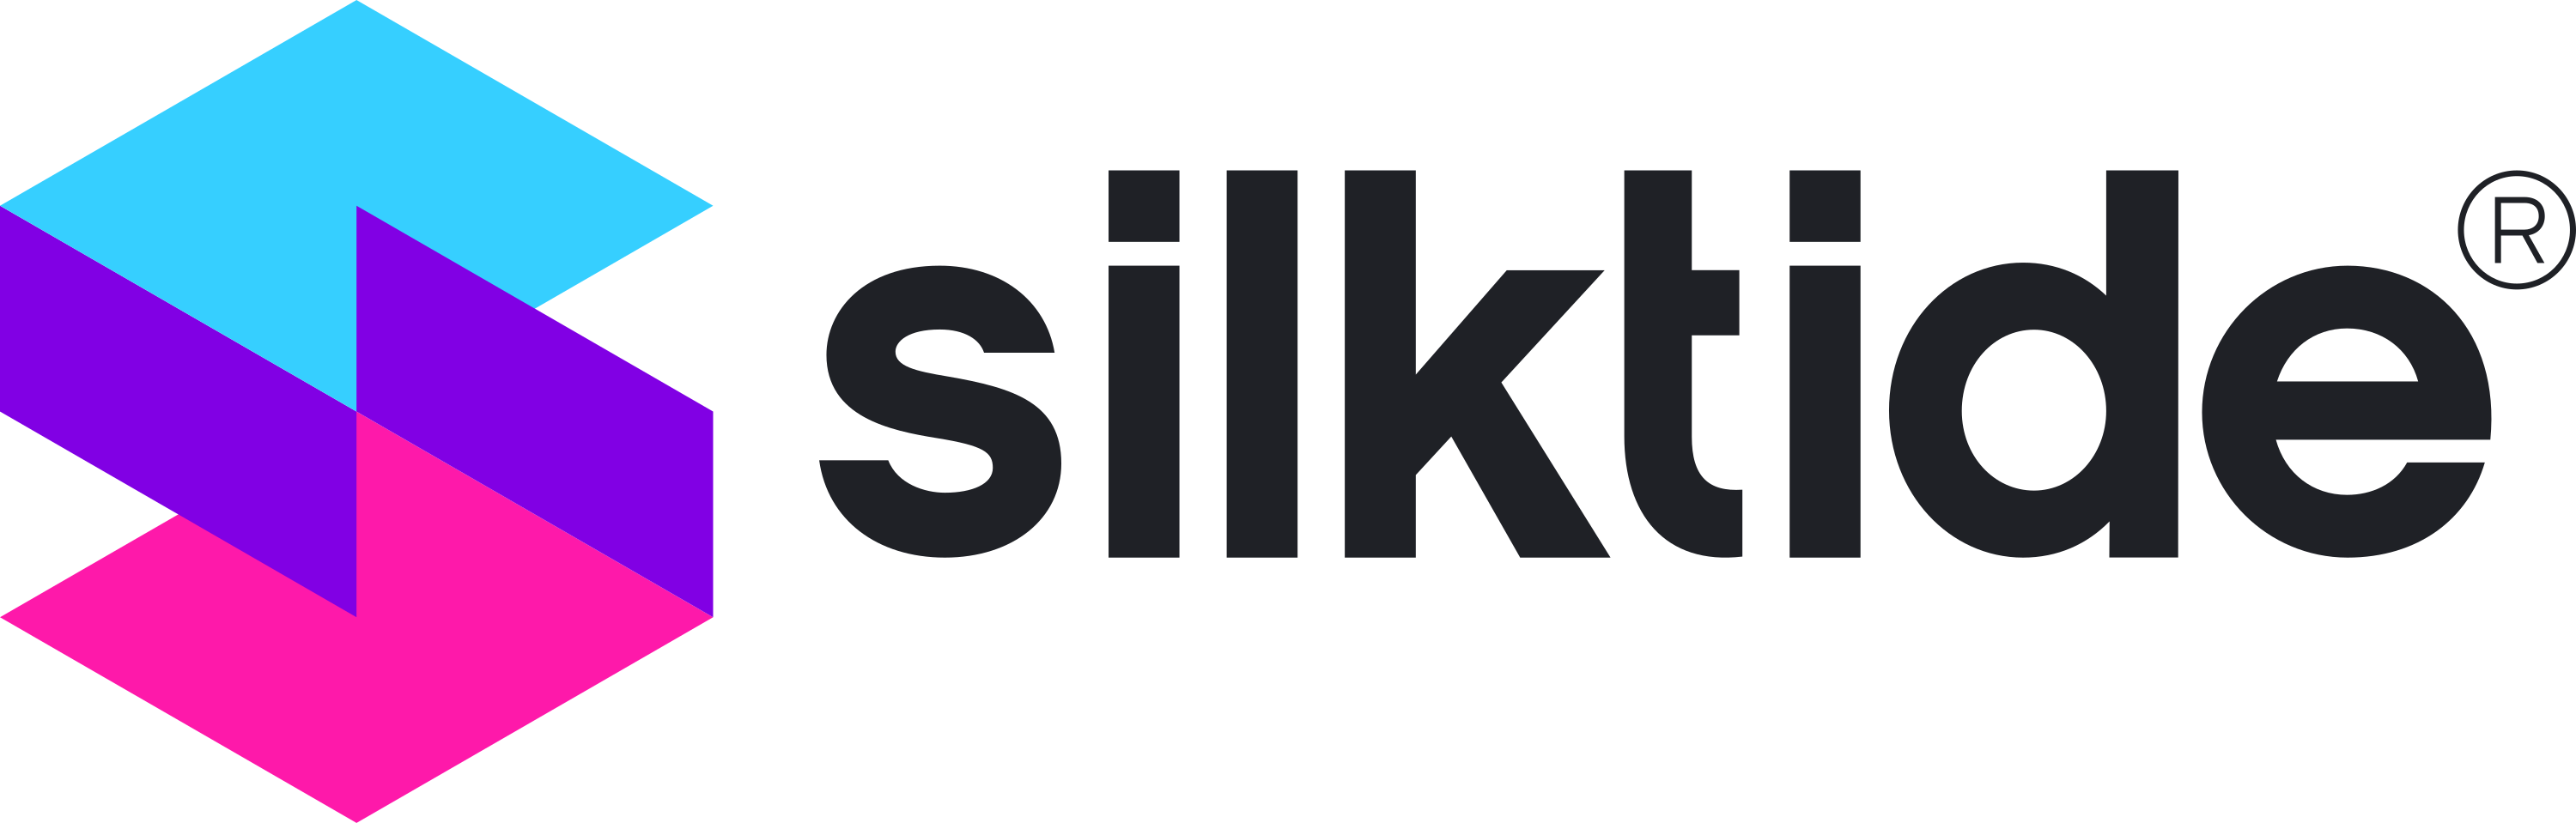 Silktide Logo